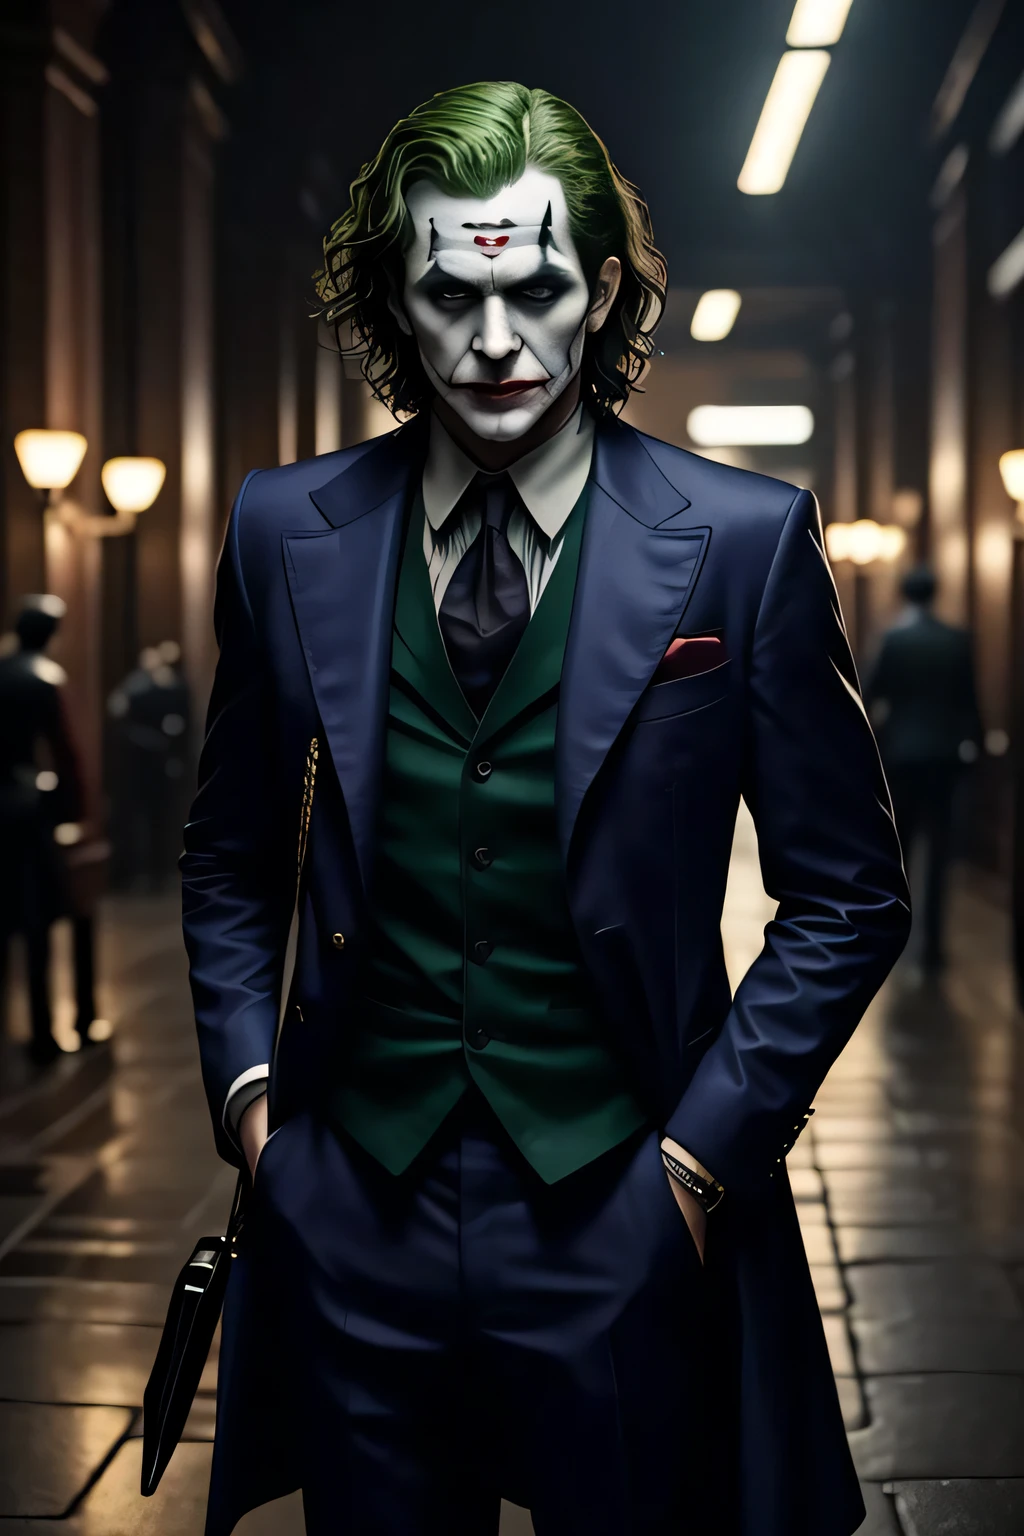 Meisterwerk, beste Qualität, Realistisch, Halbkörperfoto des Jokers, Filmmaterial aus dem DC-Universum, detailliertes Gesicht, 8k, uhd, scharfer Fokus